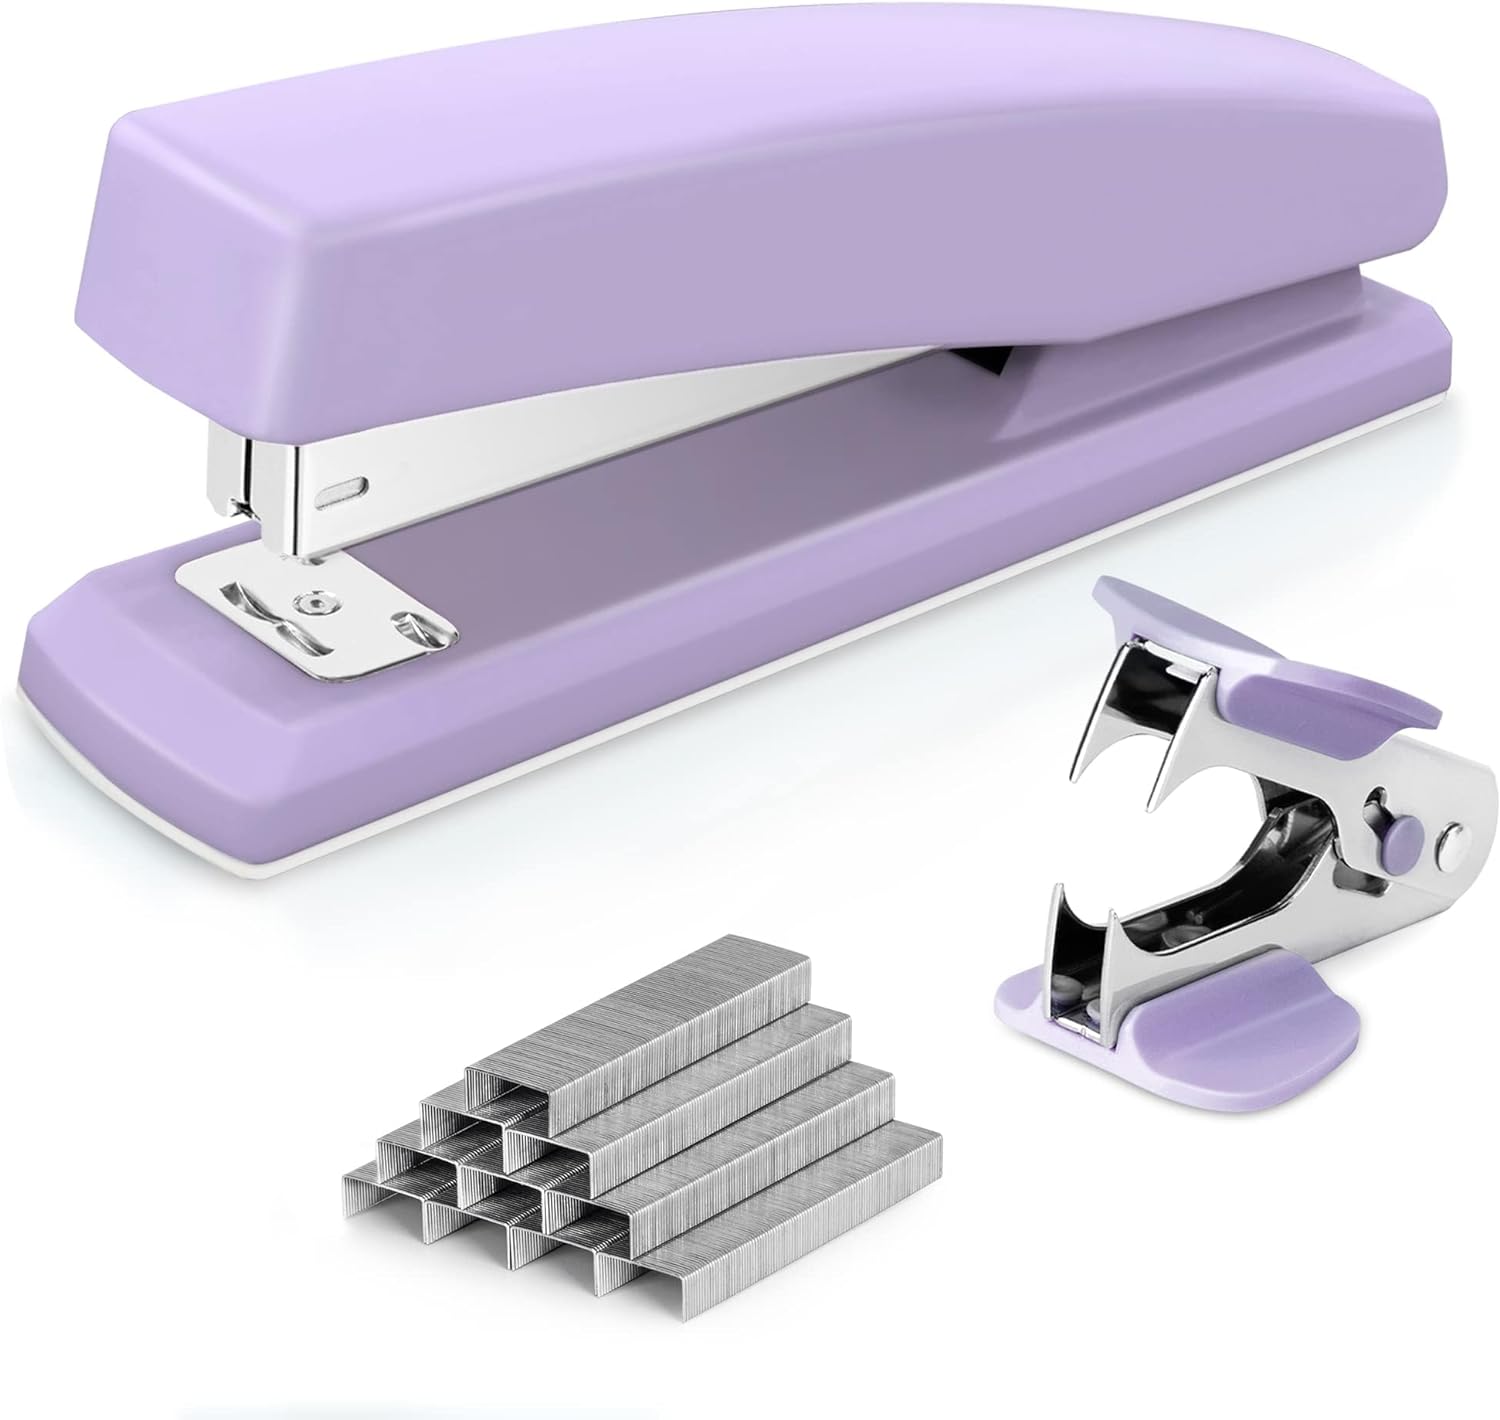 Deli Stapler, Desktop Stapler, Office Stapler, 20 Sheet Capacity, Includes 1000 Staples and Staple Remover, Purple